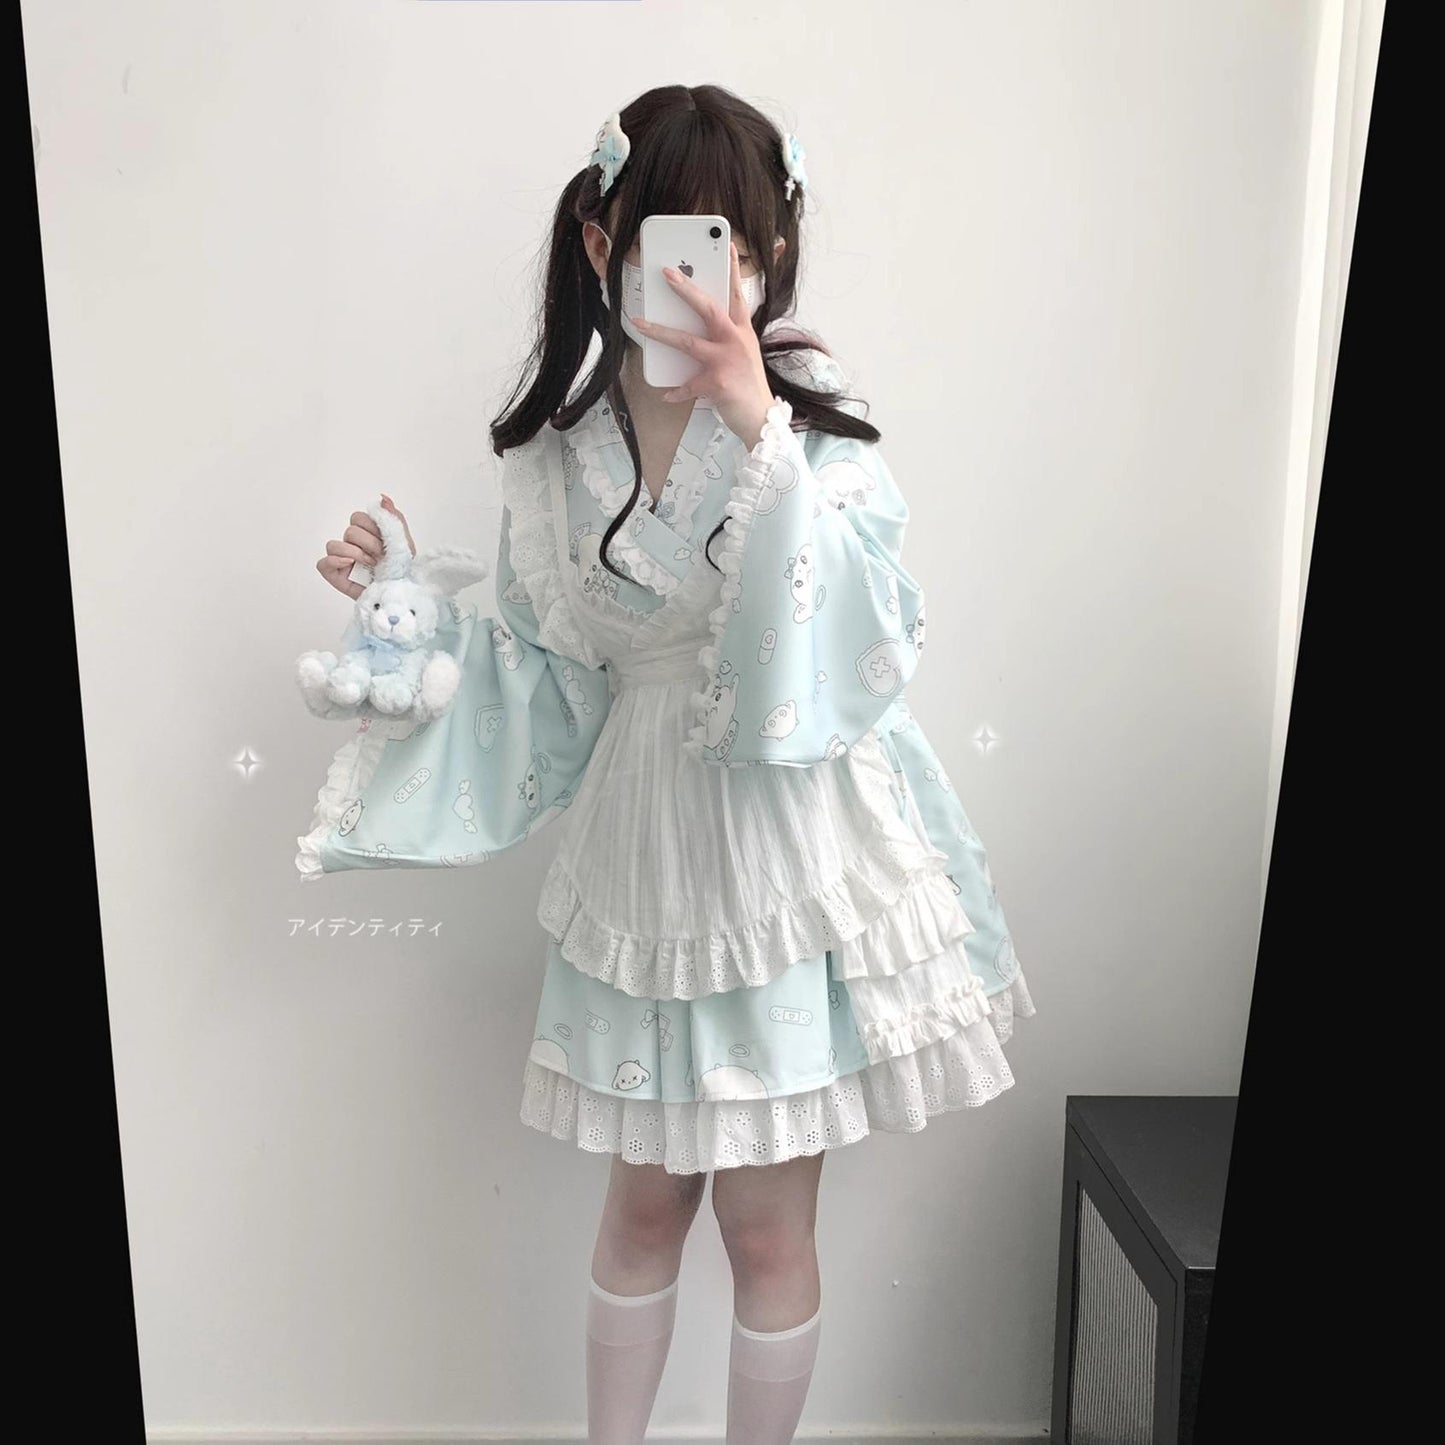 Tenshi Kaiwai Patchwork Skirt Kimono Top White Apron Three-Piece Set 36786:536844